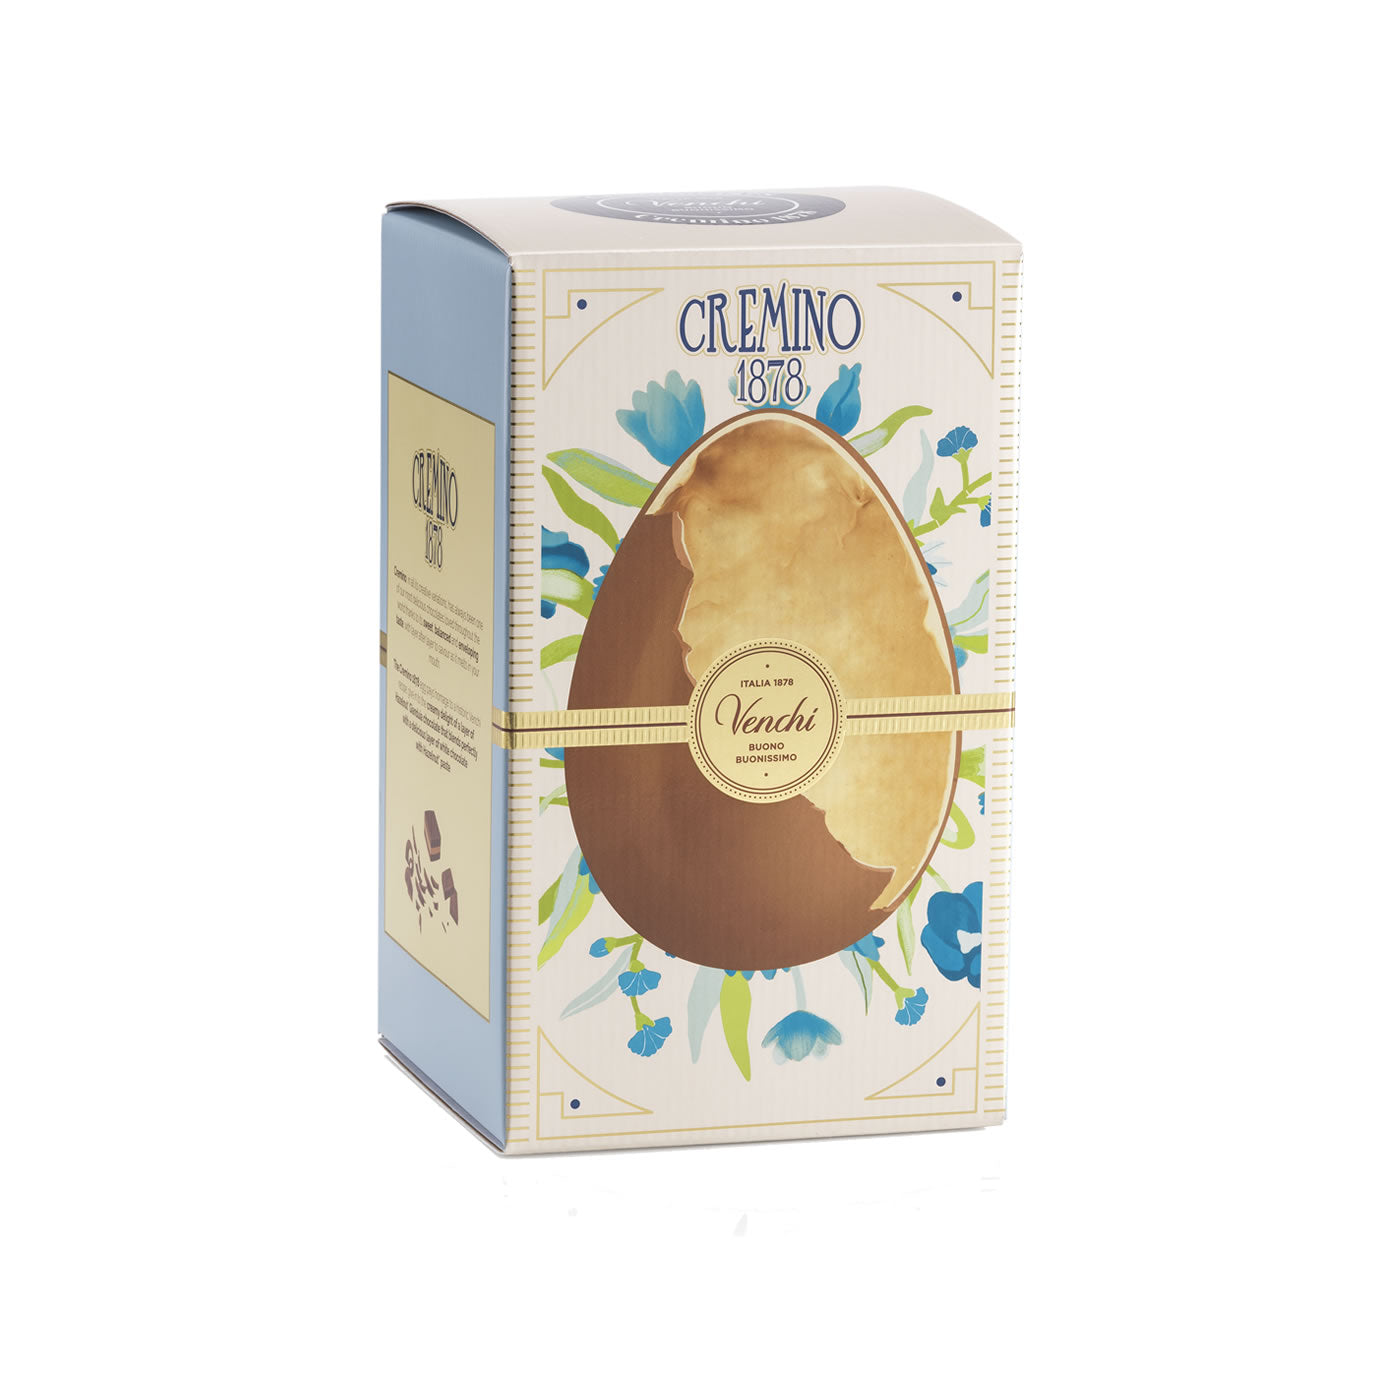 Cremino 1878 chocolate egg